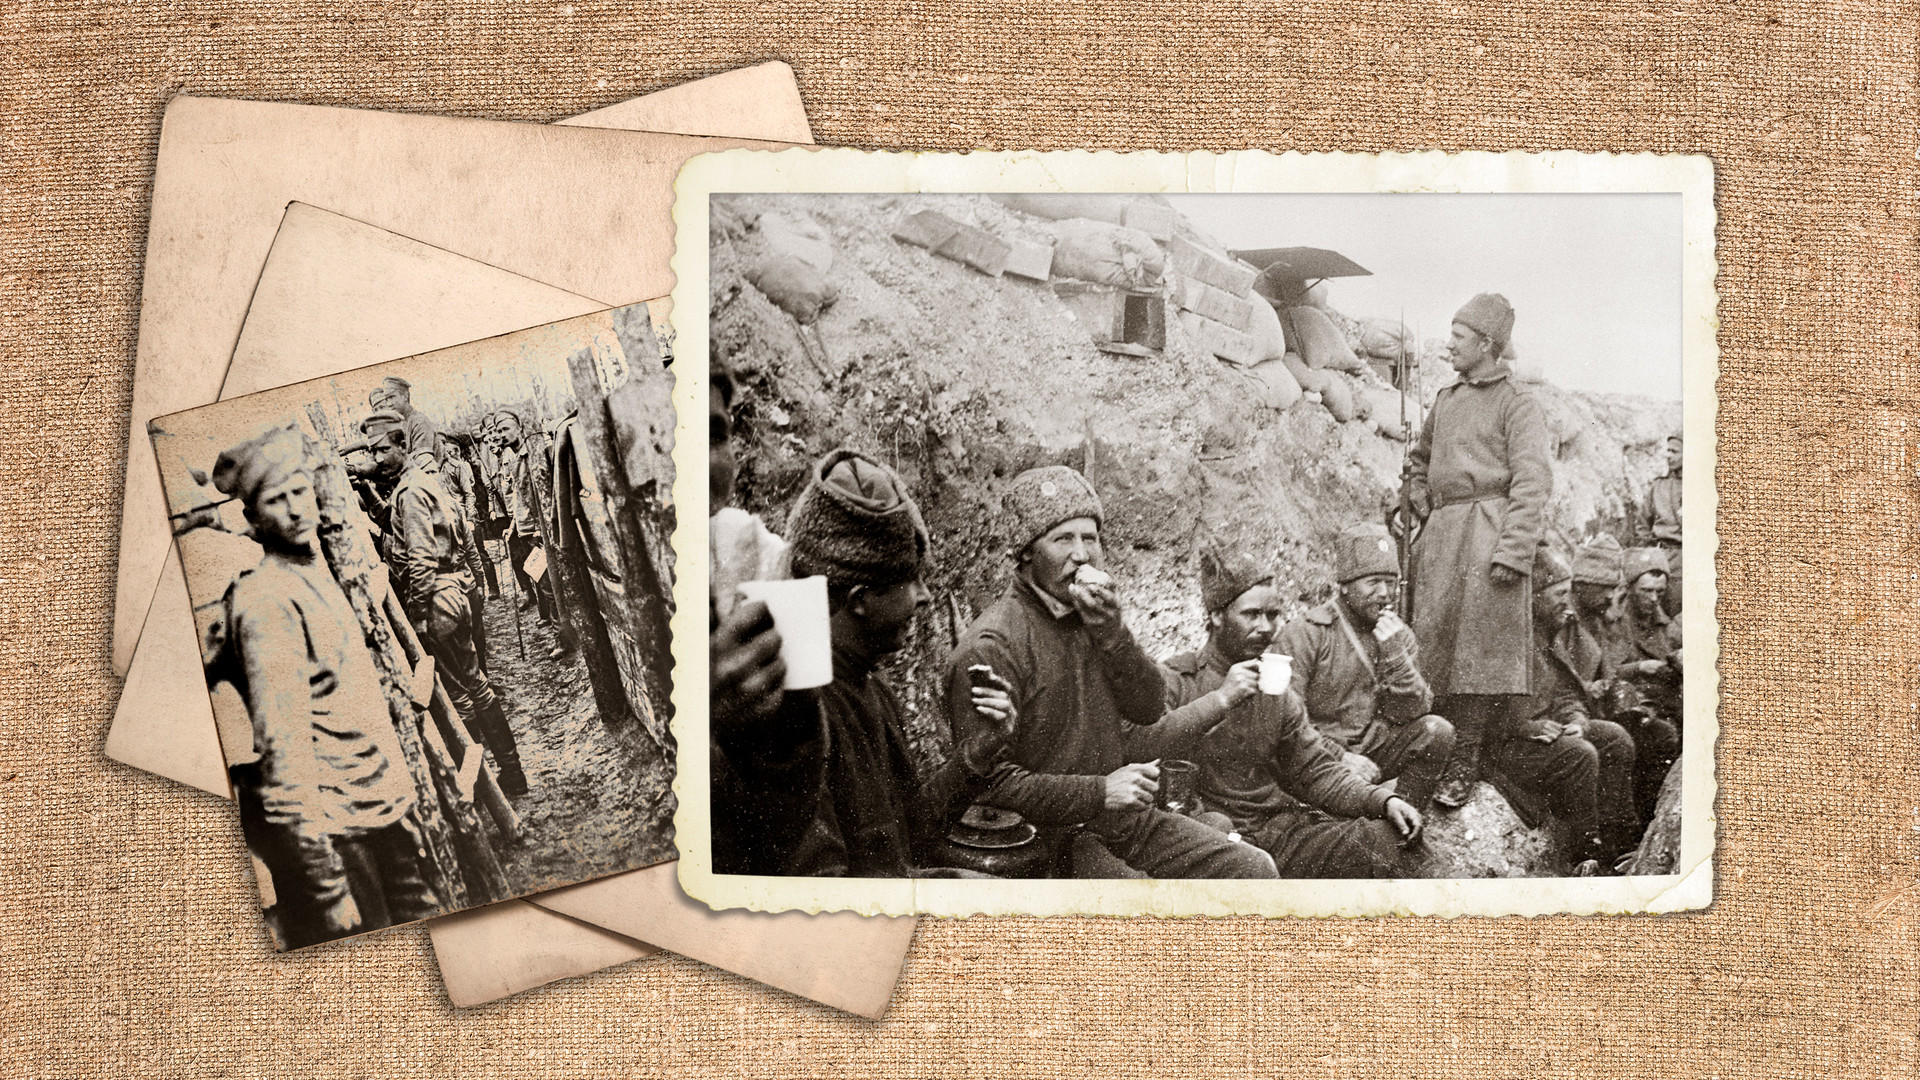 Први светски рат (1914-1918). Руски војници. Предах између борби. 30 април 1917.